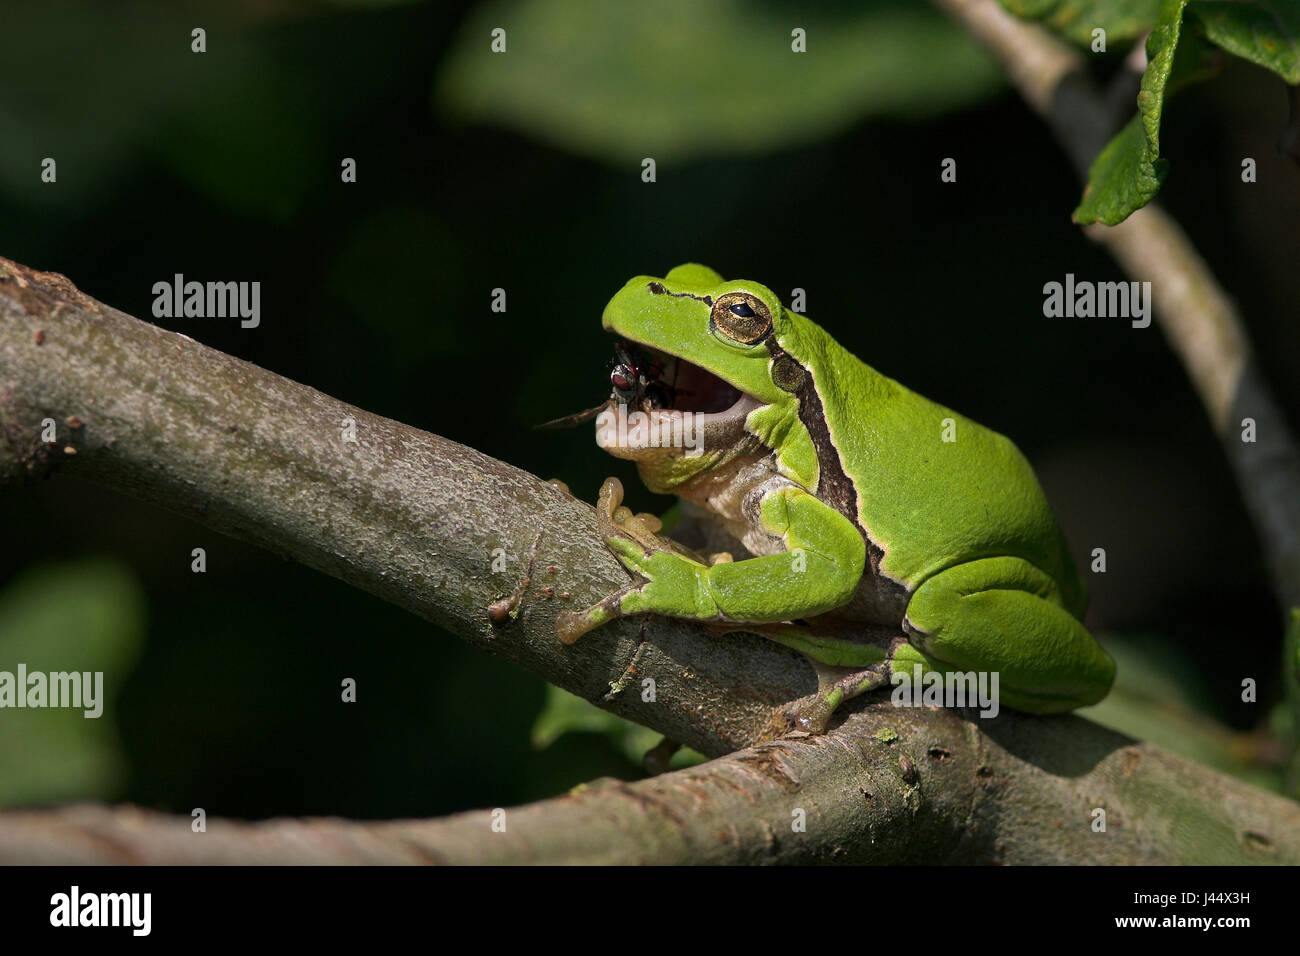 European tree frog eats fly Stock Photo